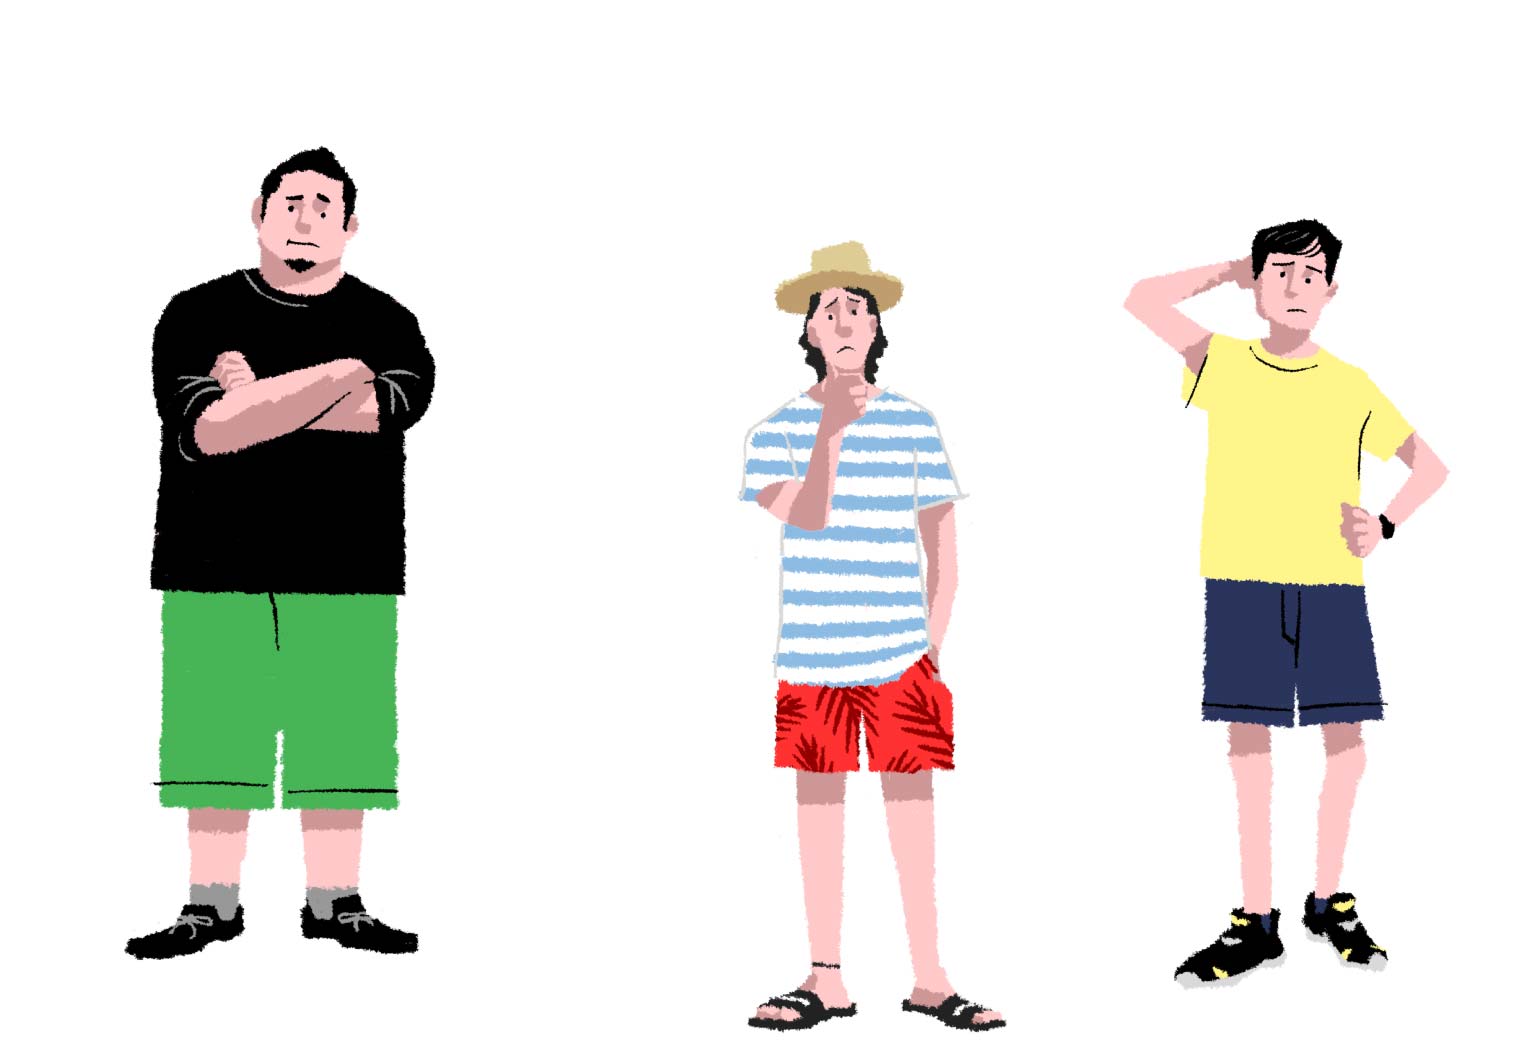 左：太足が悩みの男性のイラスト　中央：華奢が悩みの男性のイラスト　右：子どもっぽいのが悩みの男性のイラスト